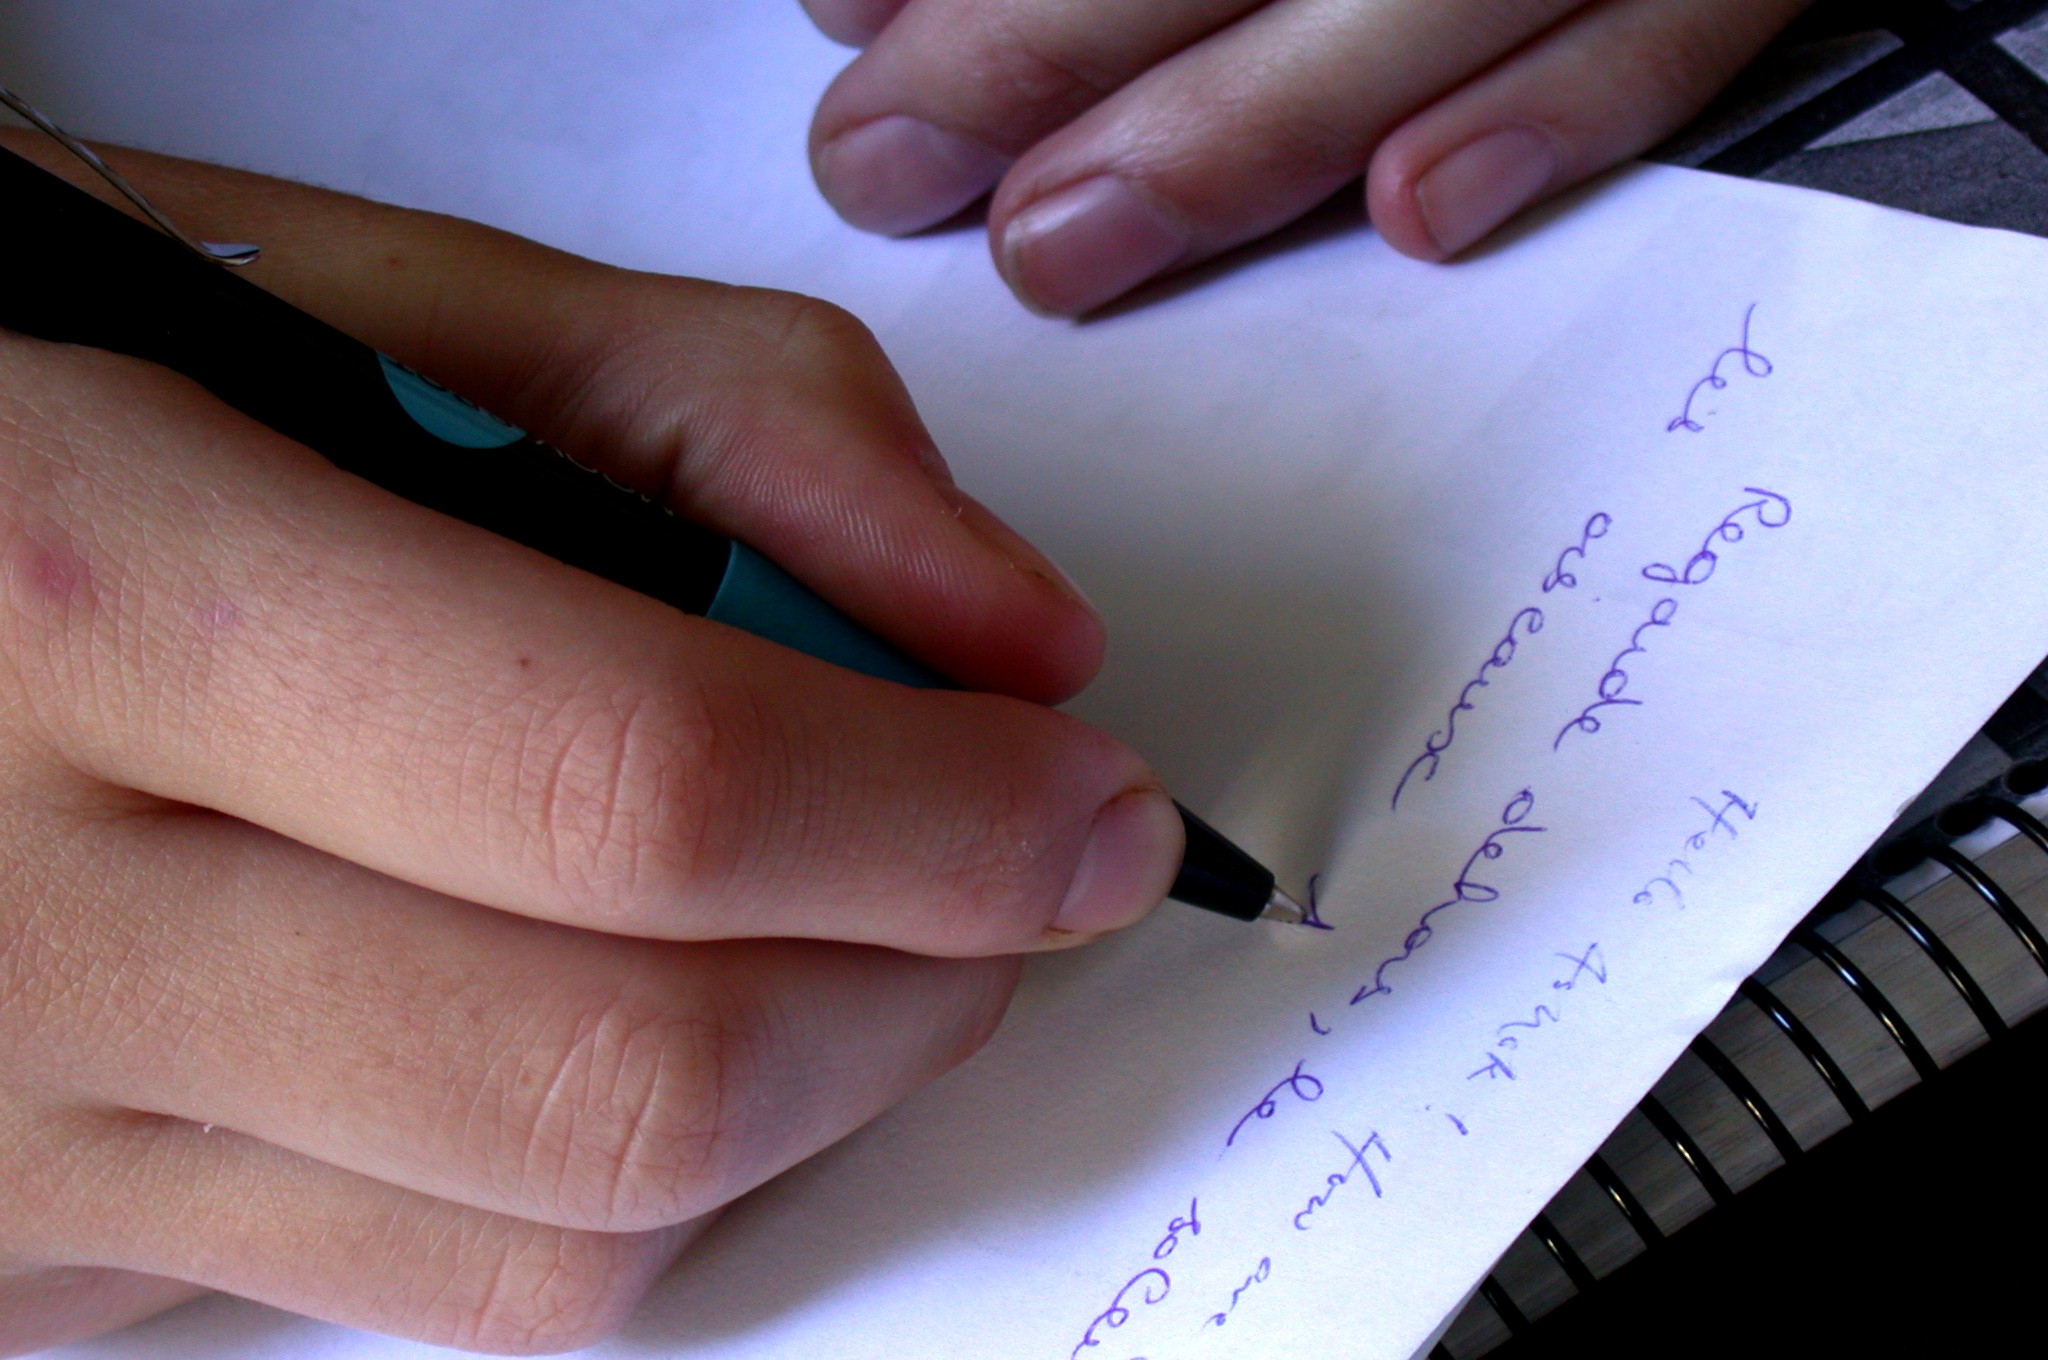 Esta imagen muestra una mano derecha que escribe mientras la izquierda se apoya en el papel